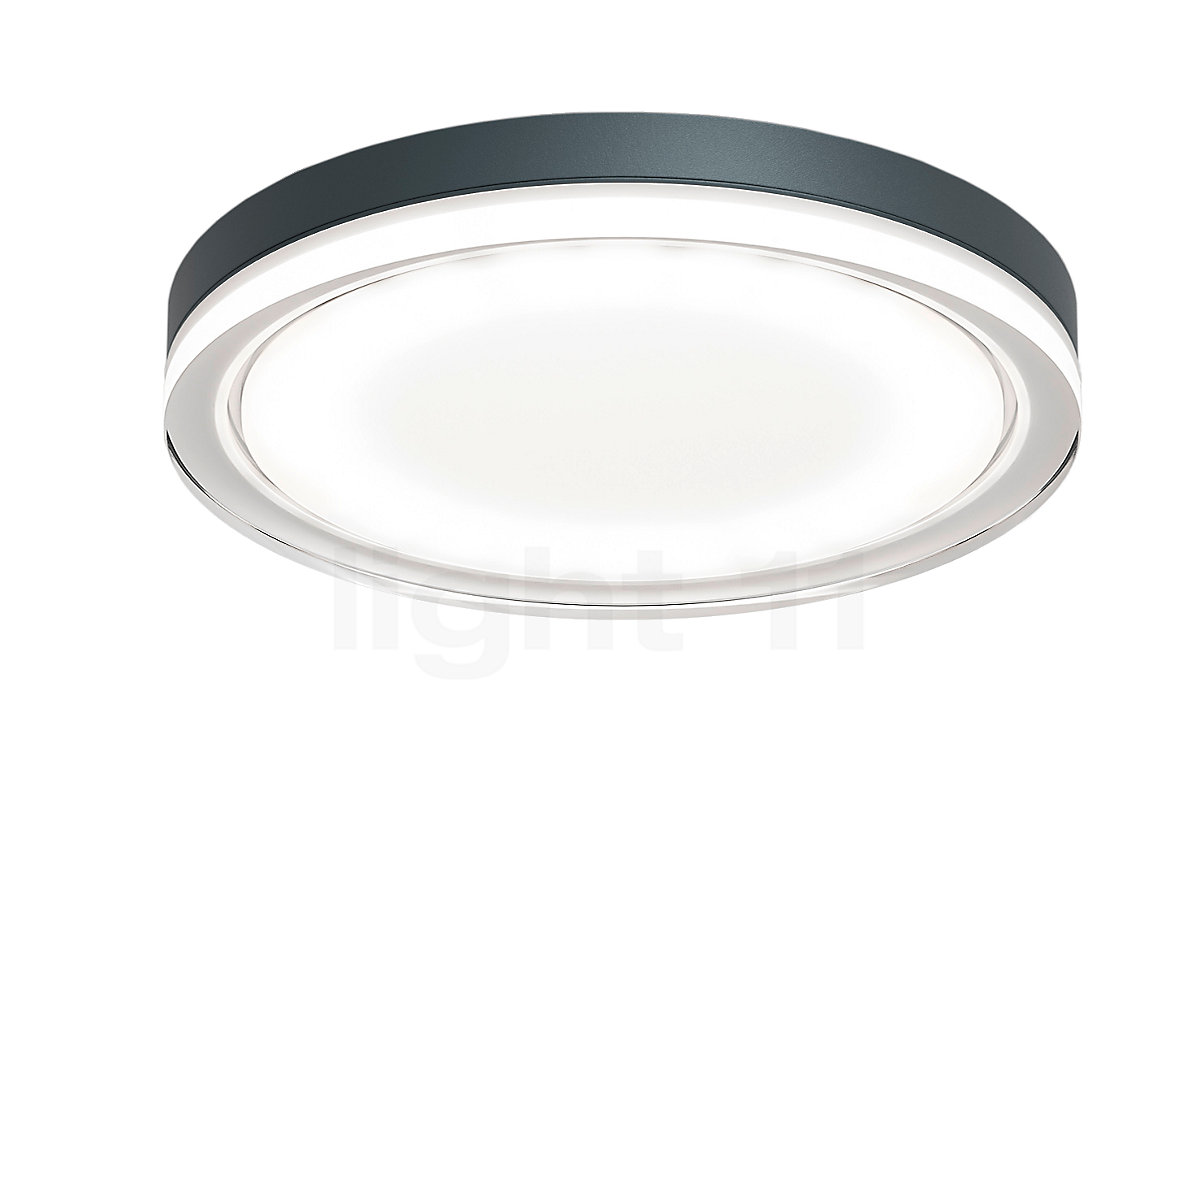 Opsplitsen zuur omverwerping Buy IP44.de Lisc Wall/Ceiling Light LED at light11.eu